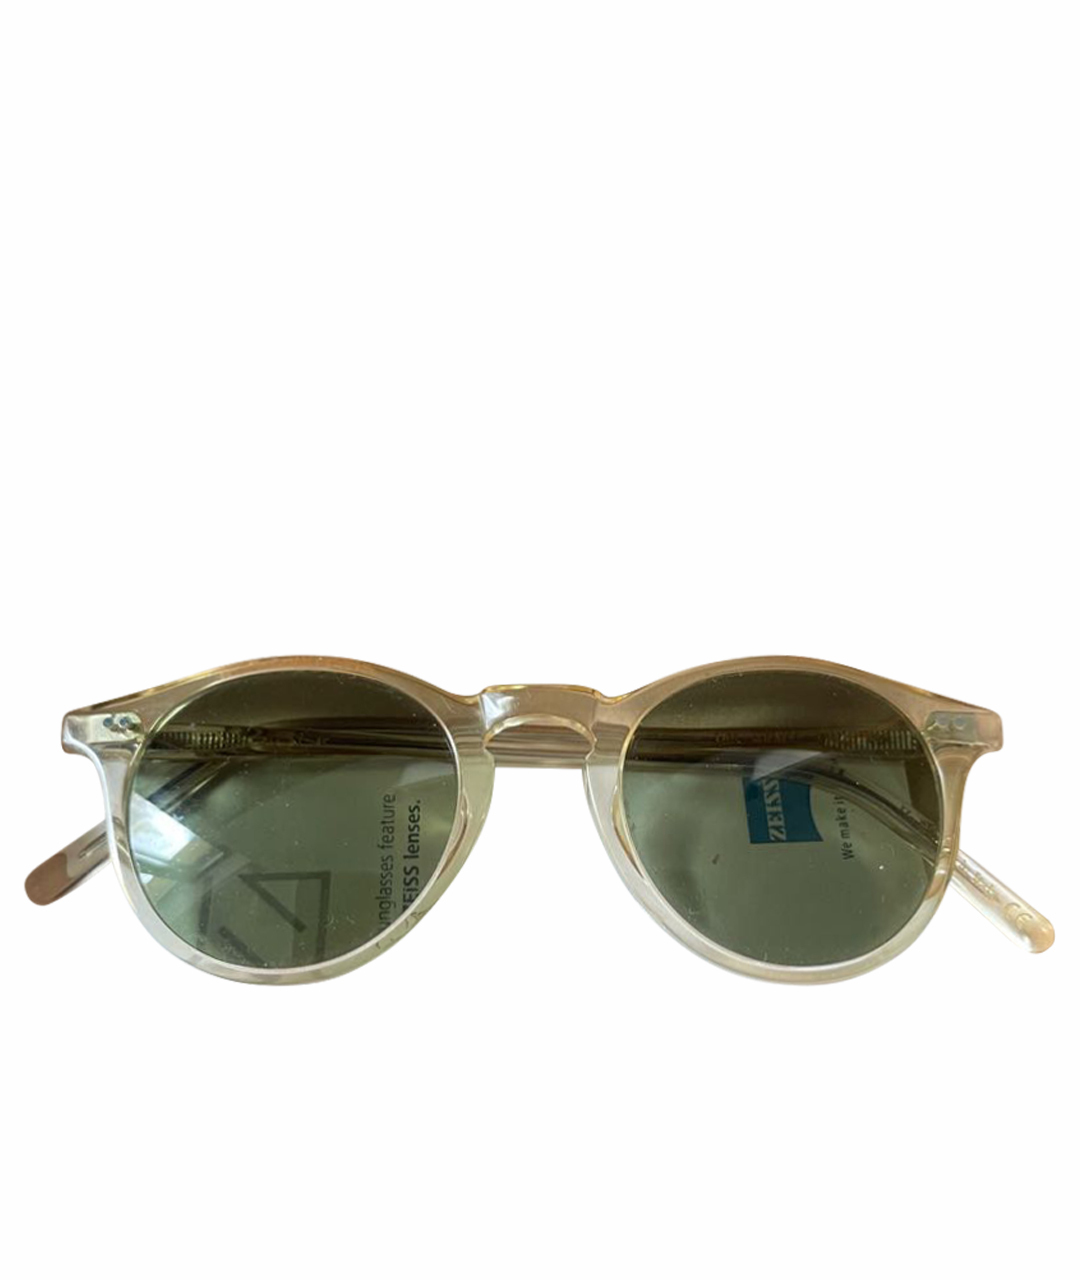 DORIANI CASHMERE Белые пластиковые солнцезащитные очки, фото 1